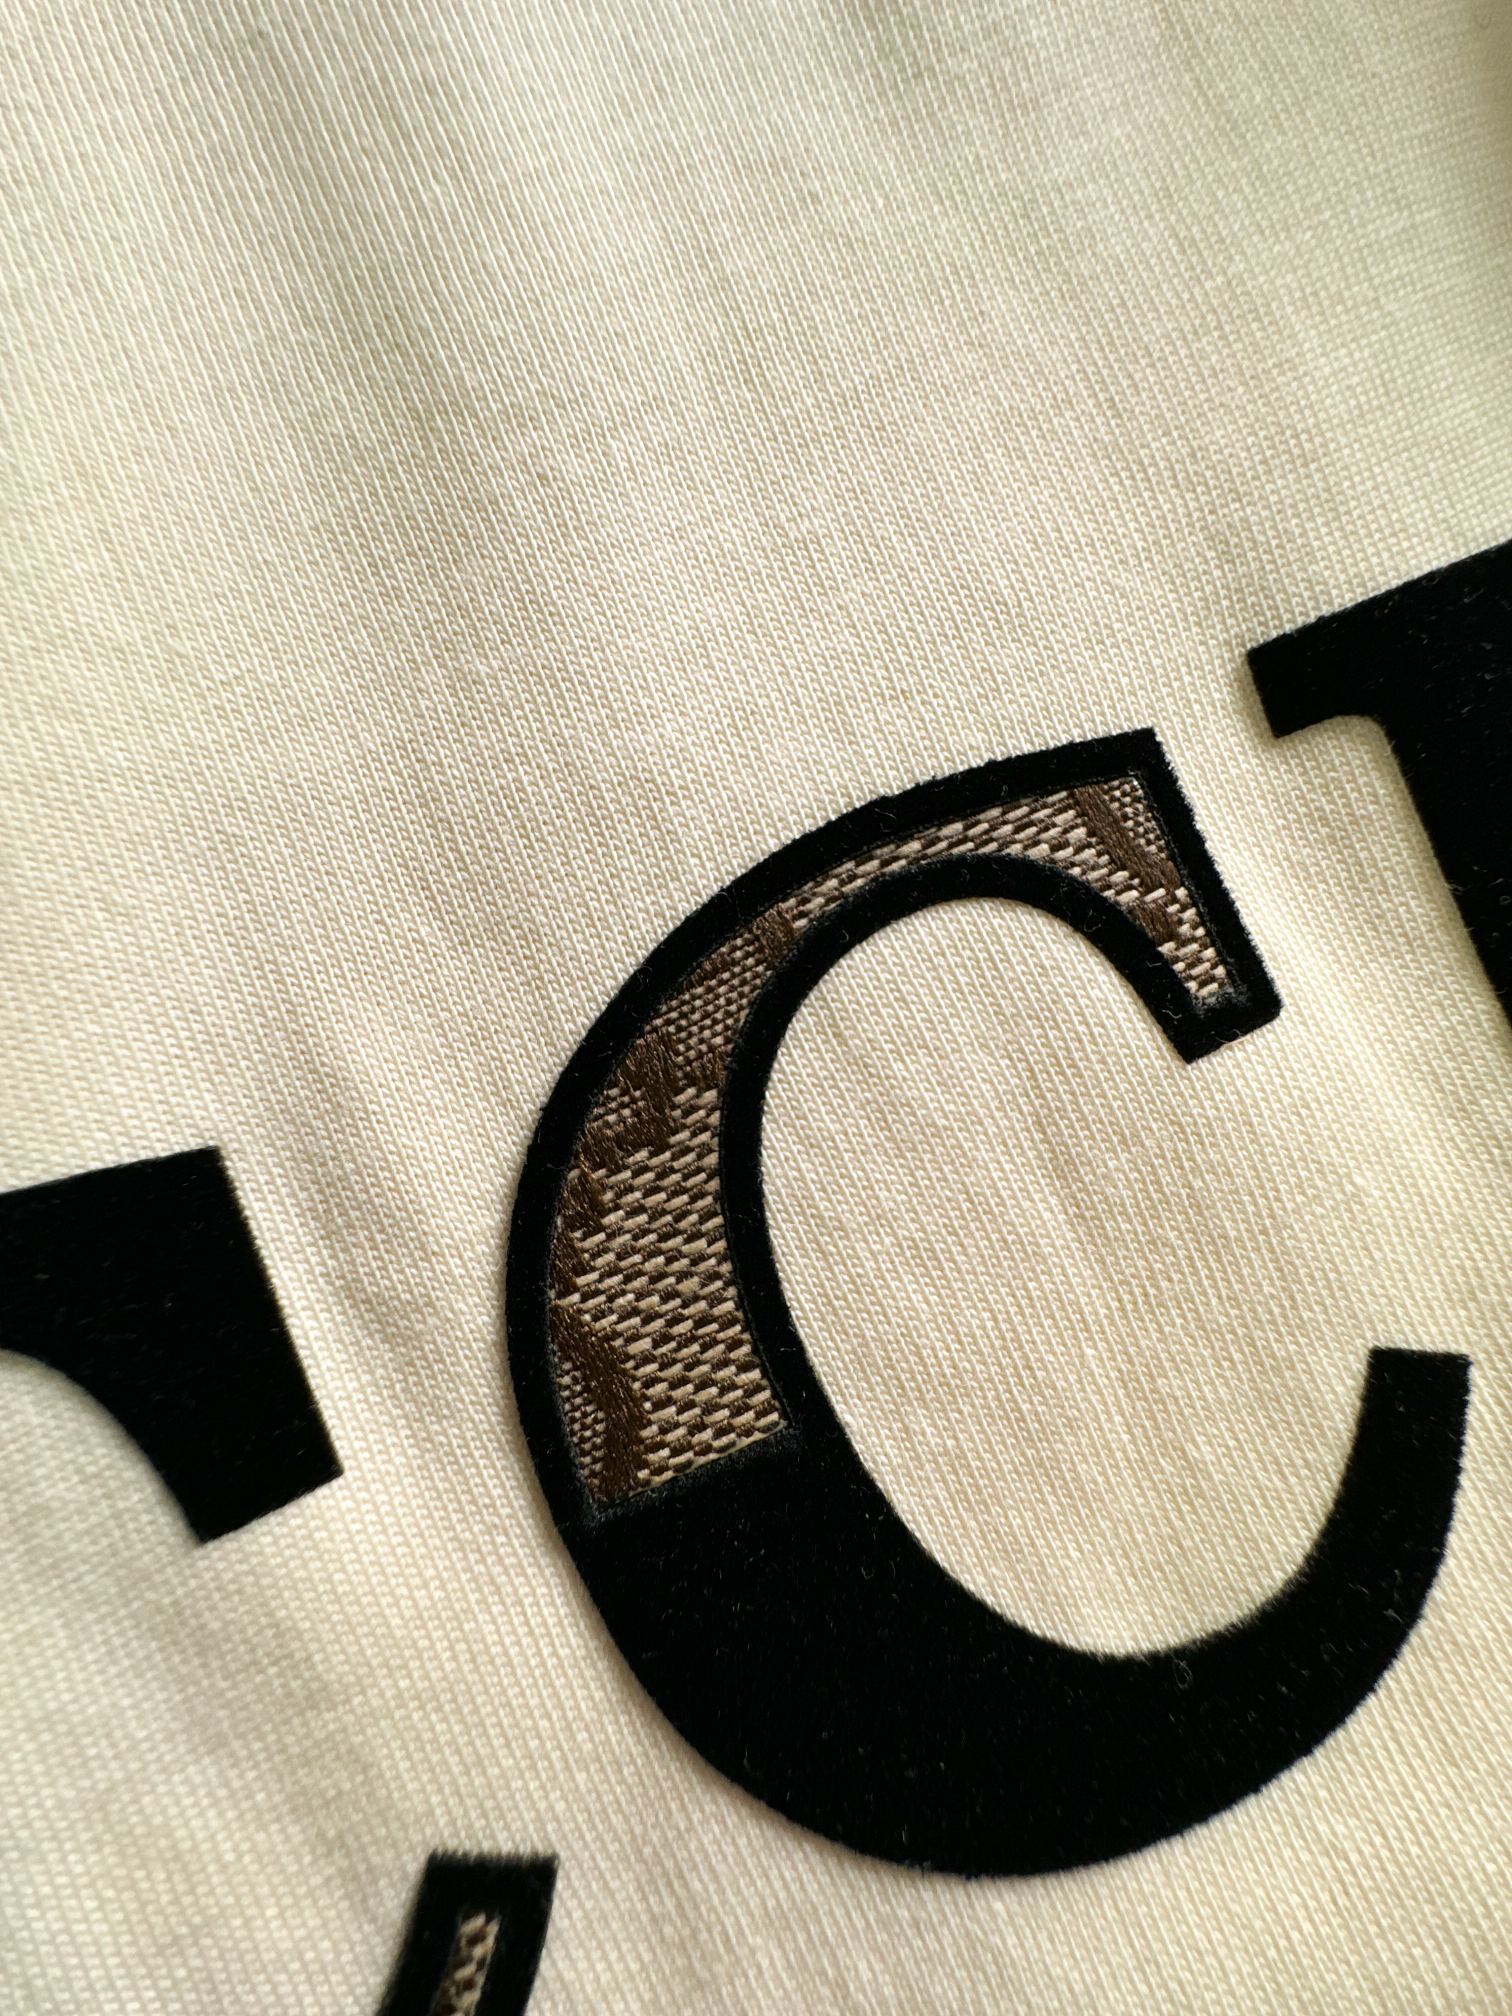 Gucc*24春夏新款字母logo贴布植绒绣互扣式双G短袖T恤具备独特个性的重工单品完美演绎时髦态度跟前